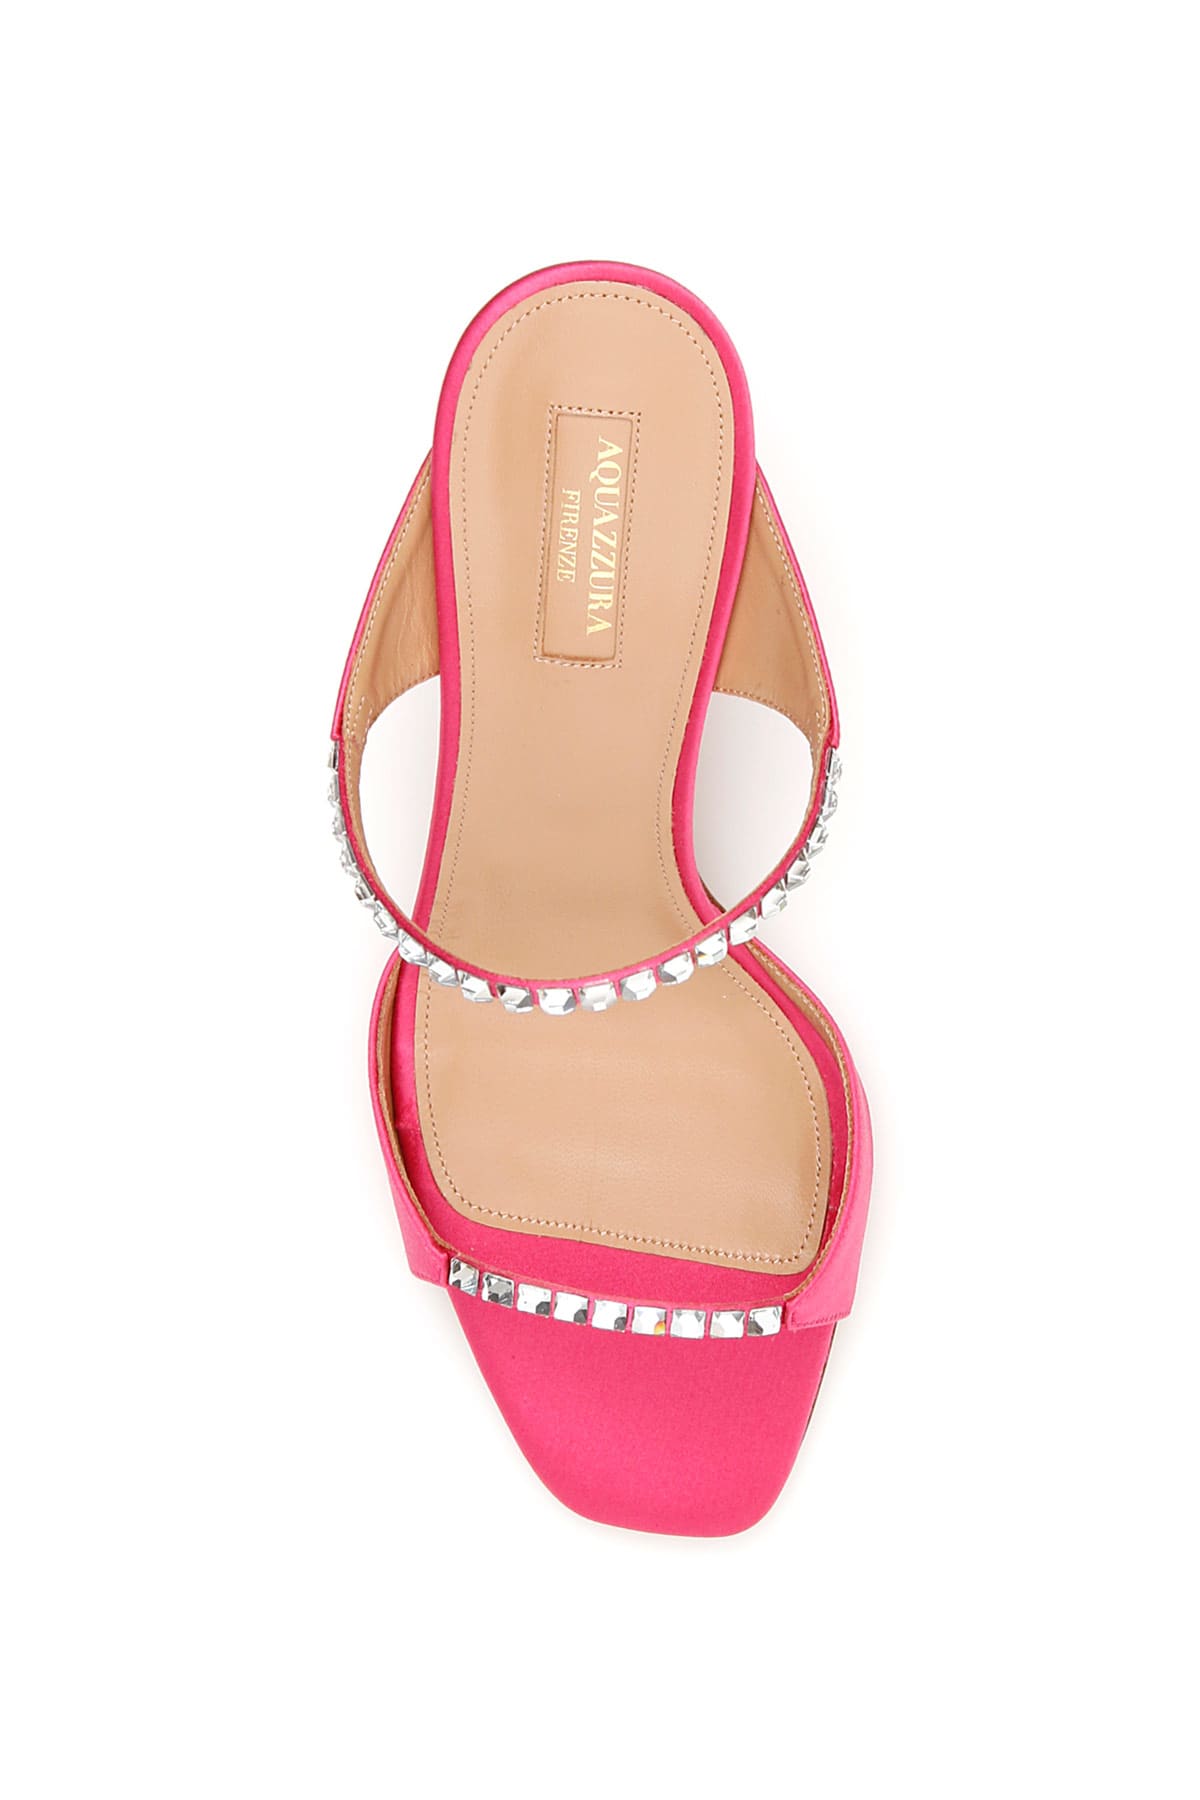 aquazzura pink sandals